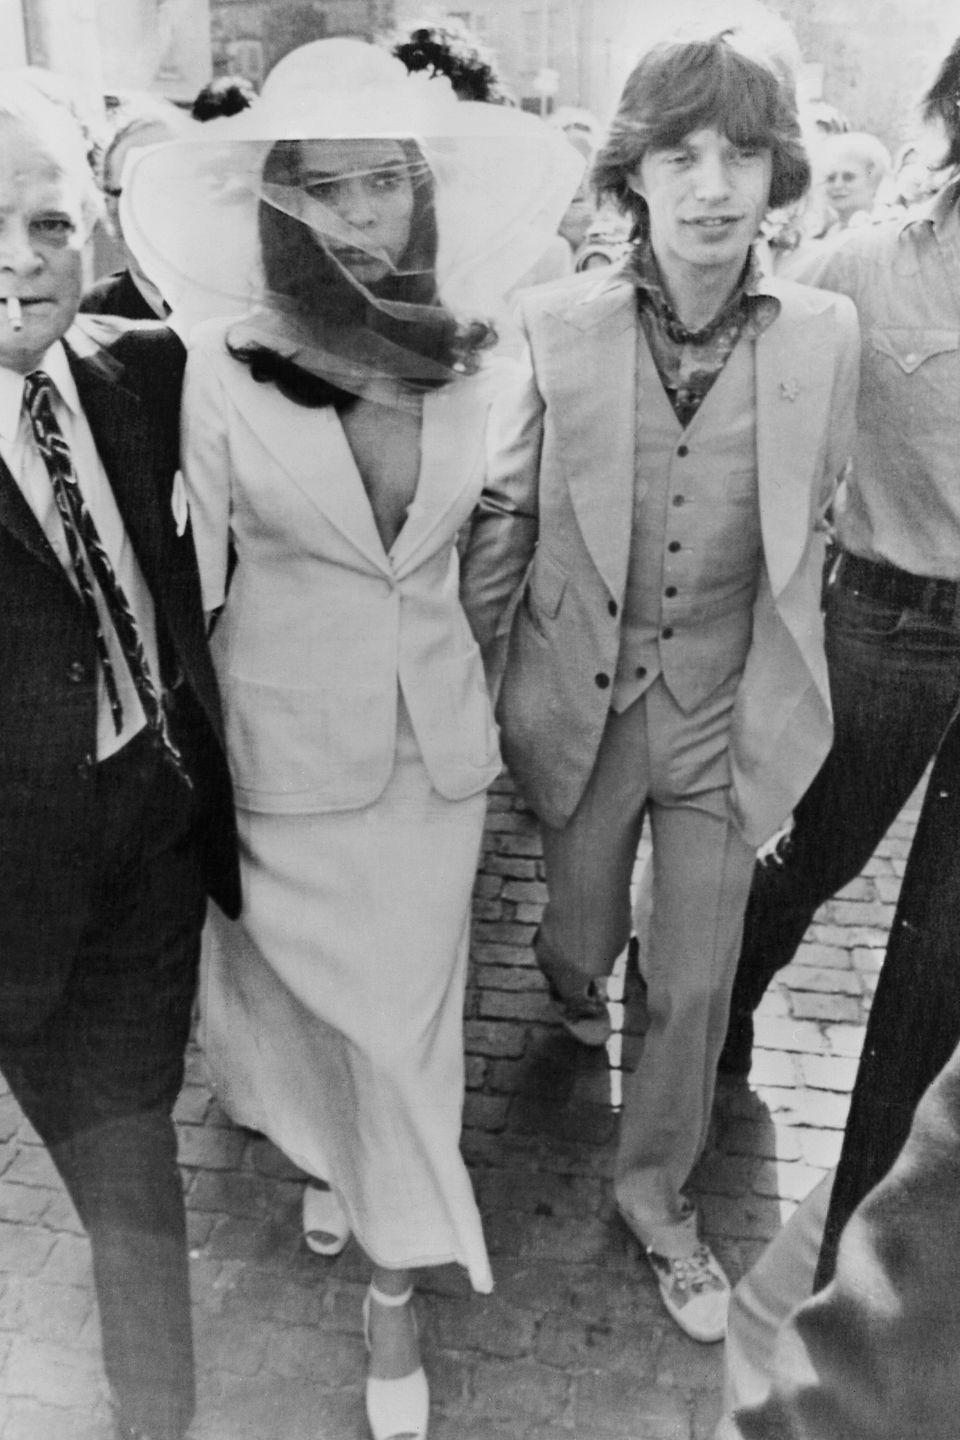 1971: Bianca Jagger and Mick Jagger